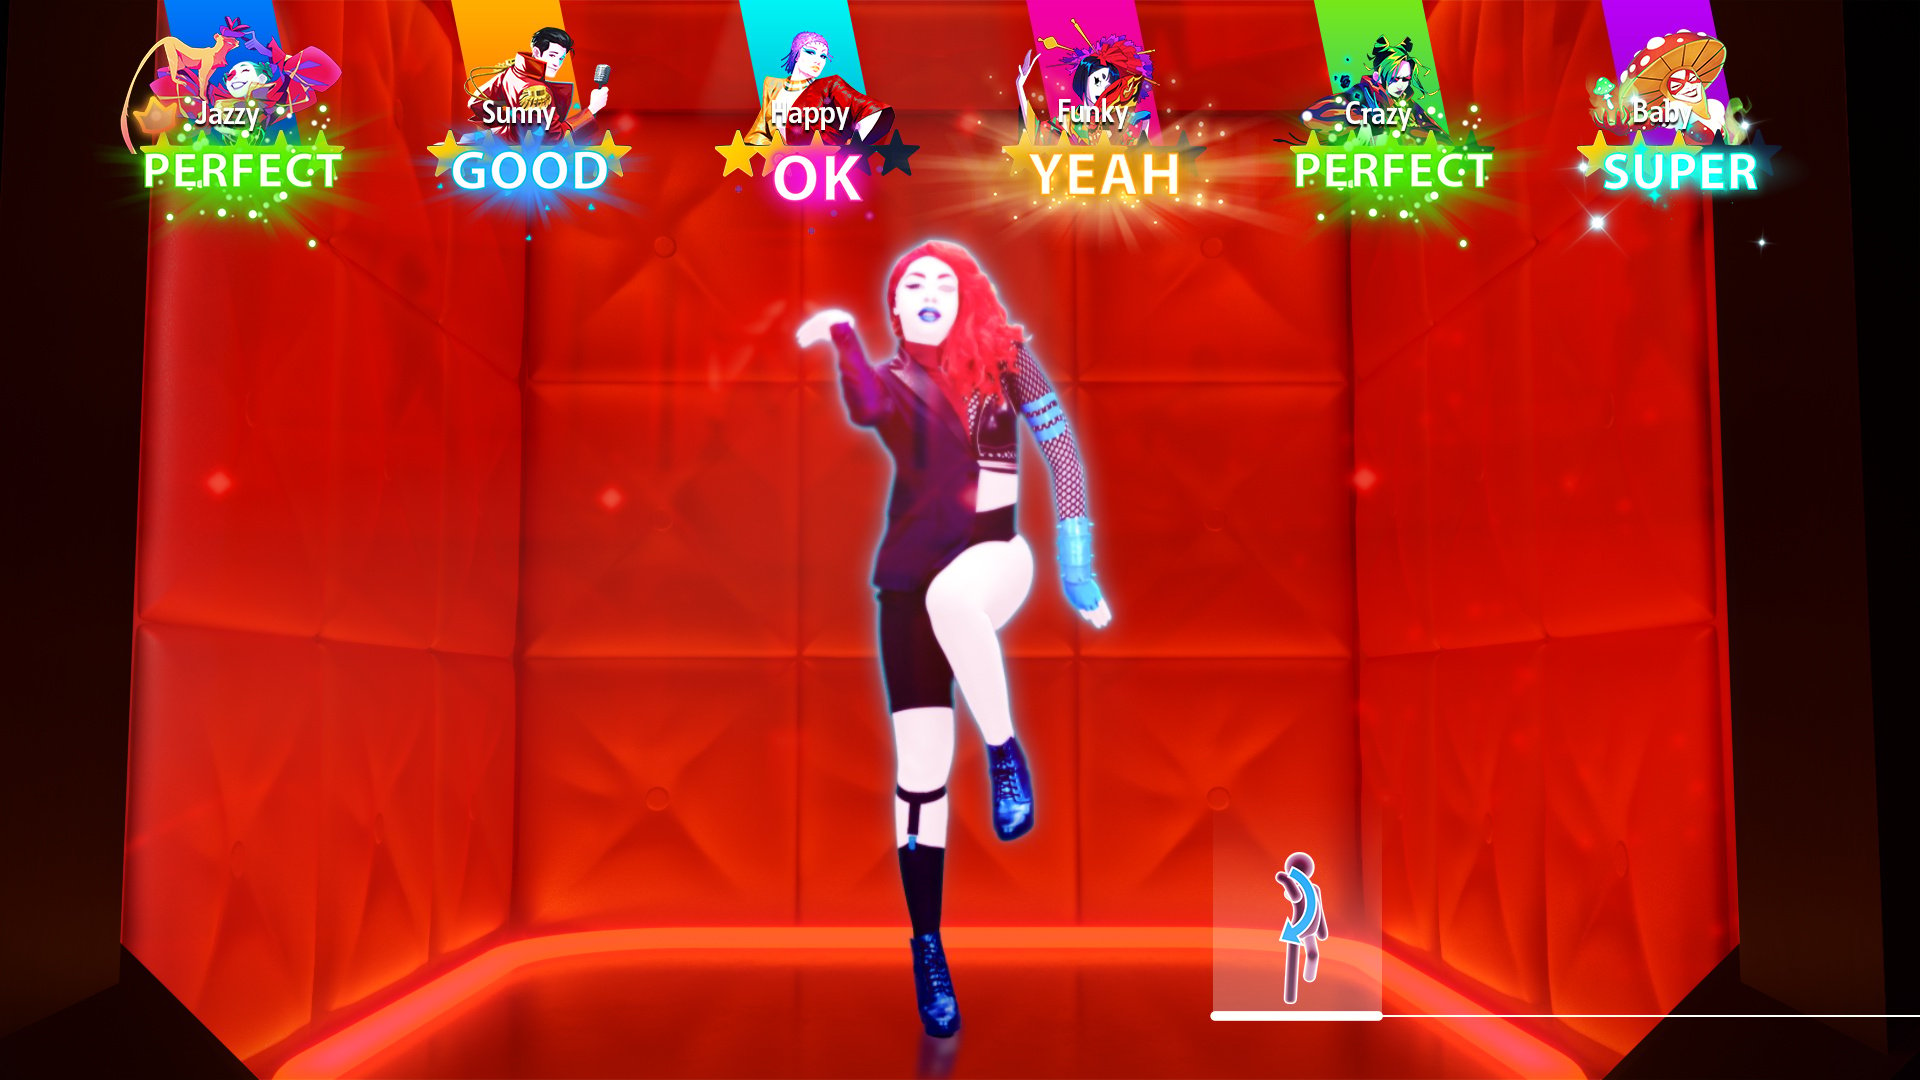 Review: Just Dance 2023 inova com customização e opções de hits